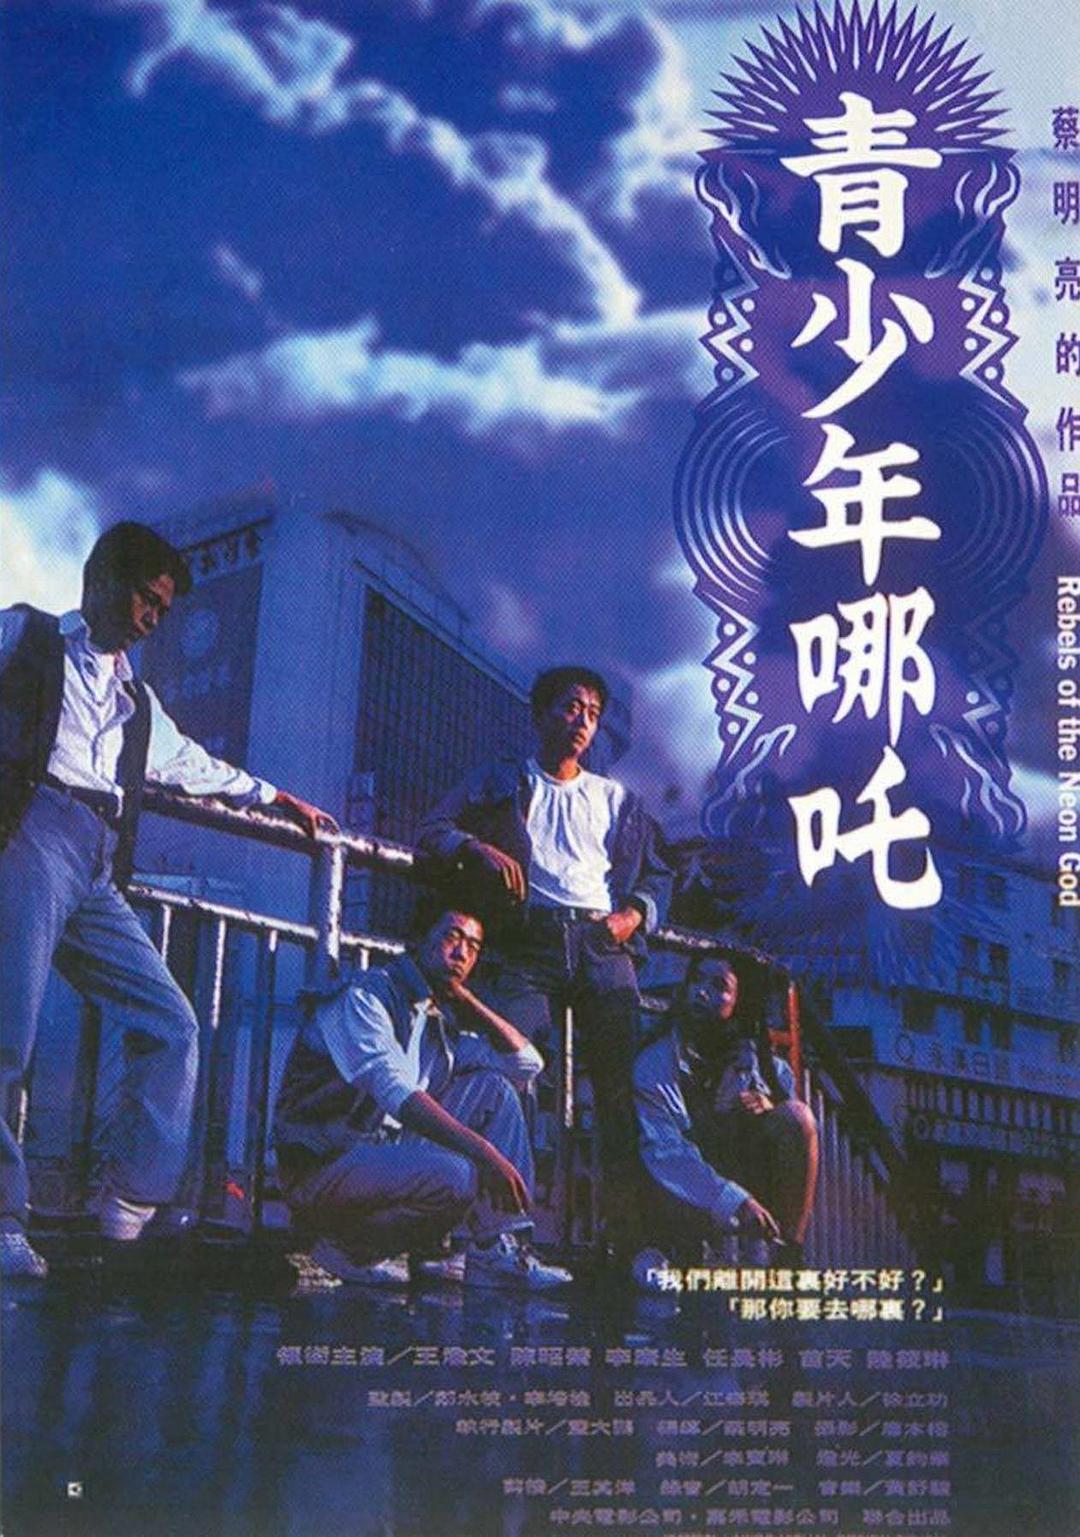 悠悠MP4_MP4电影下载_青少年哪吒 Rebels.of.the.Neon.God.1994.CHINESE.1080p.BluRay.x265-VXT 1.67 GB